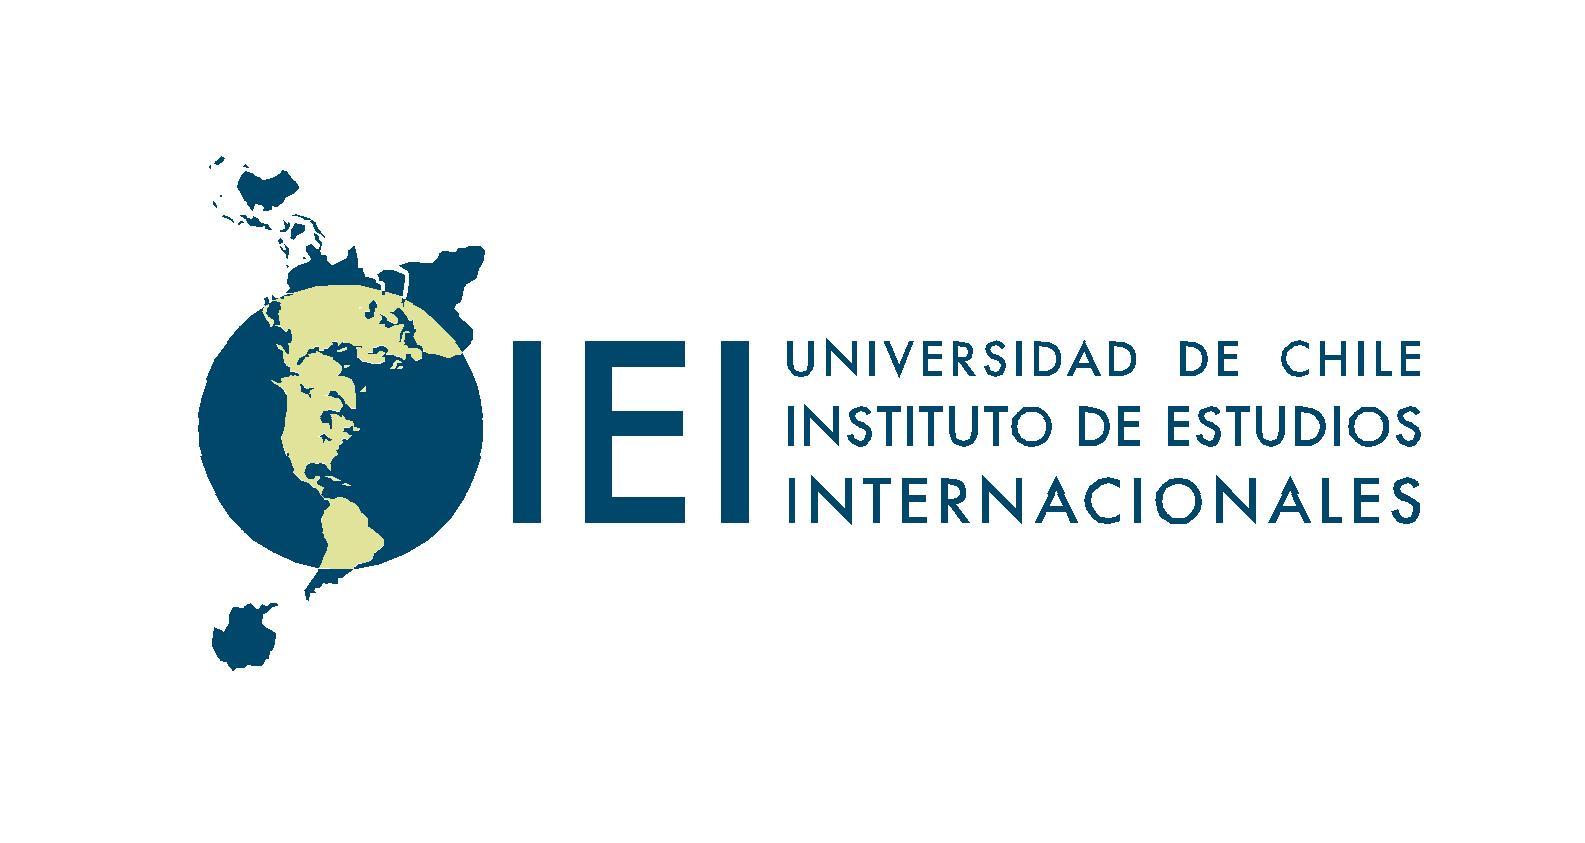 Instituto de Estudios Internacionales (Universidad de Chile)